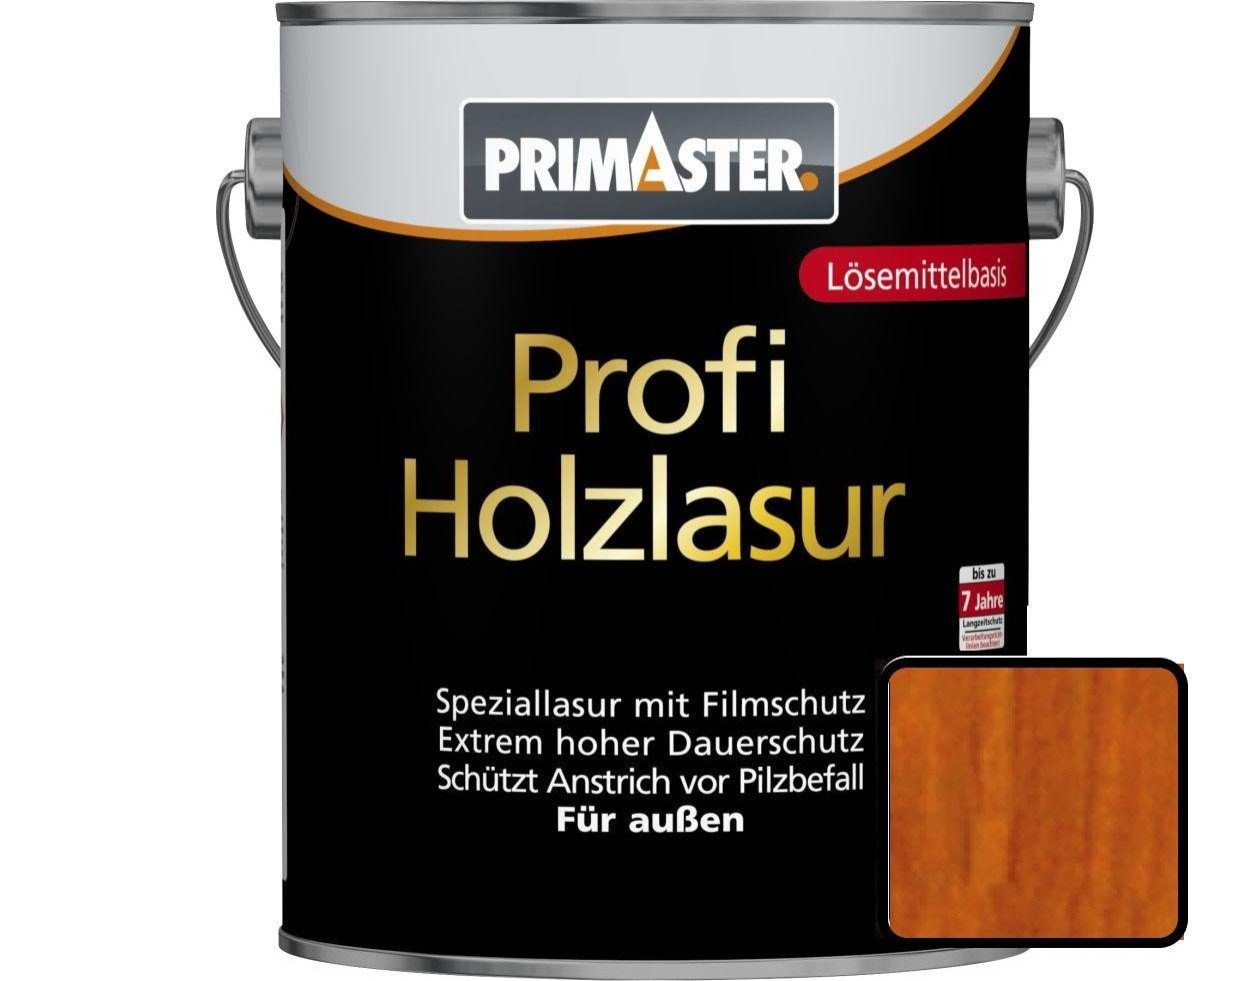 Lasur Primaster Holzlasur Primaster 2,5 L Profi teak